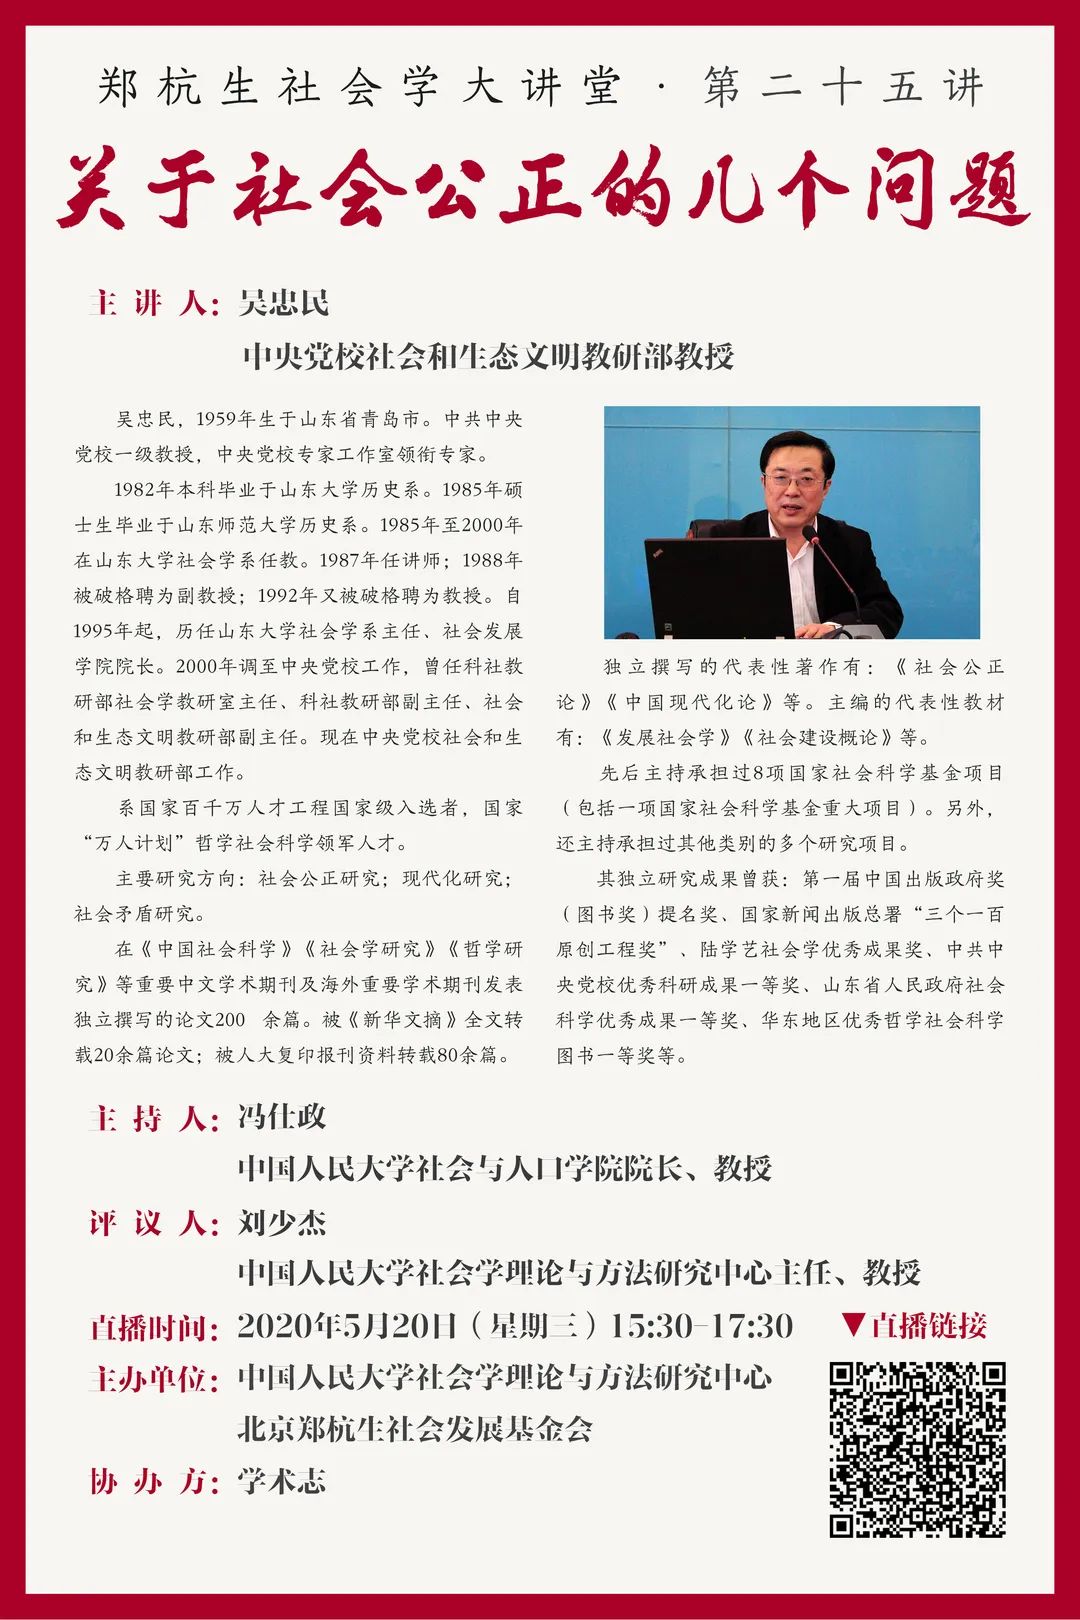 郑杭生社会学大讲堂 第二十五讲 线上直播 吴忠民 关于社会公正的